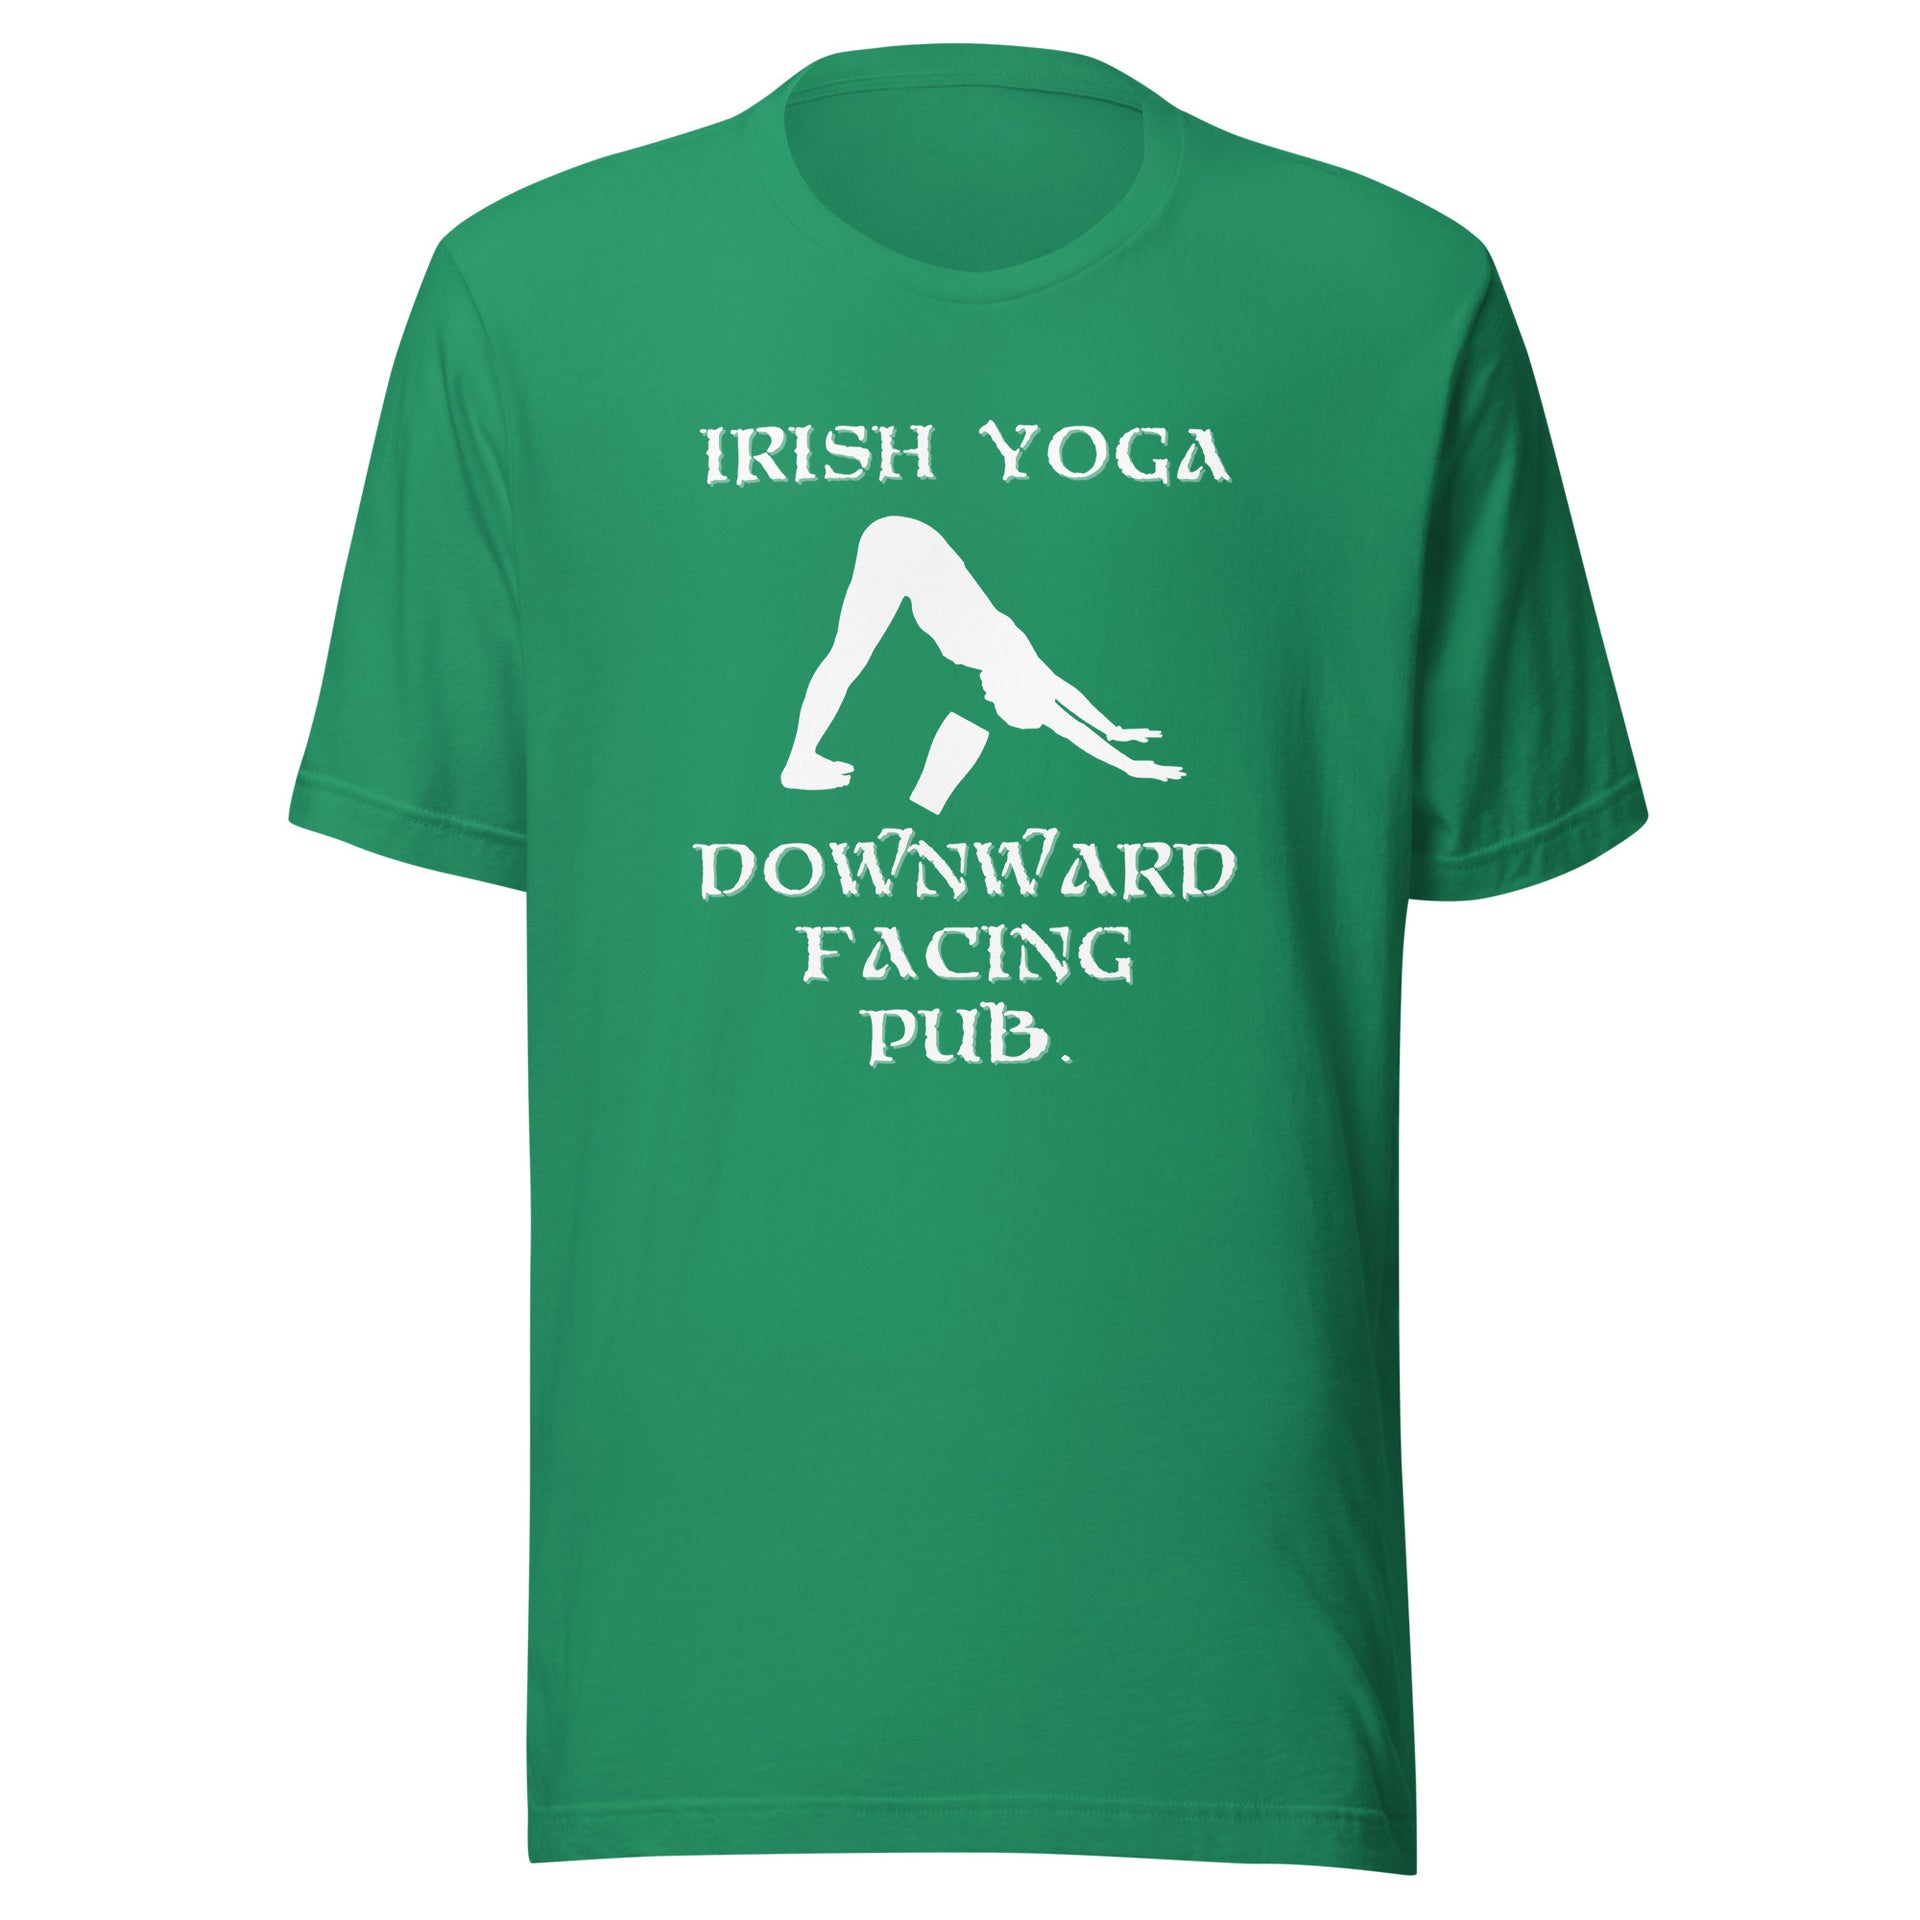 Irish Yoga – Wild Haggis Direct